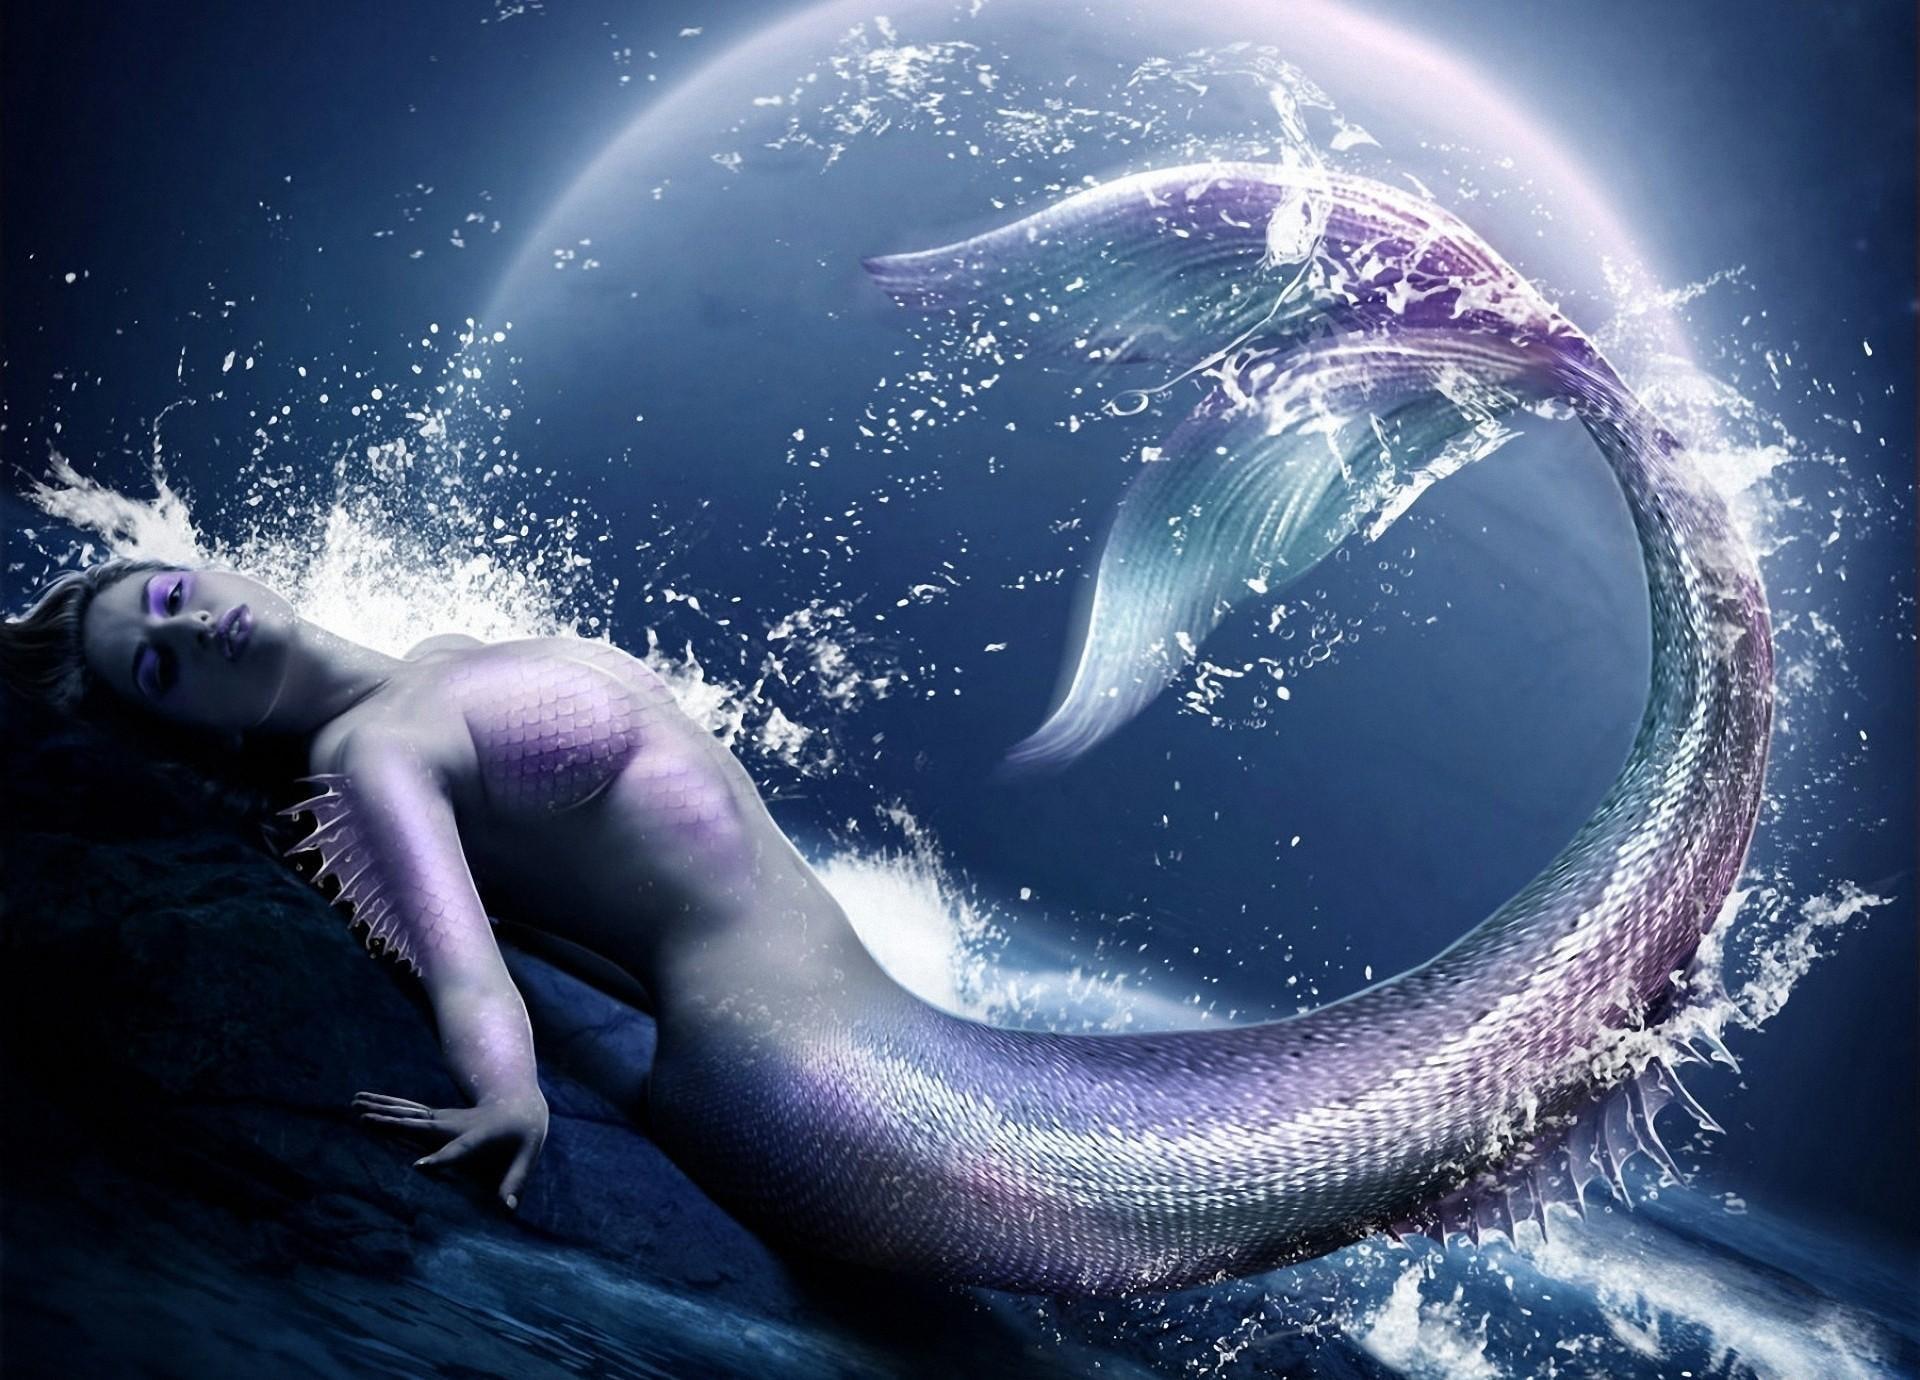 Siren illustration, mermaid, water, spray, moon, HD